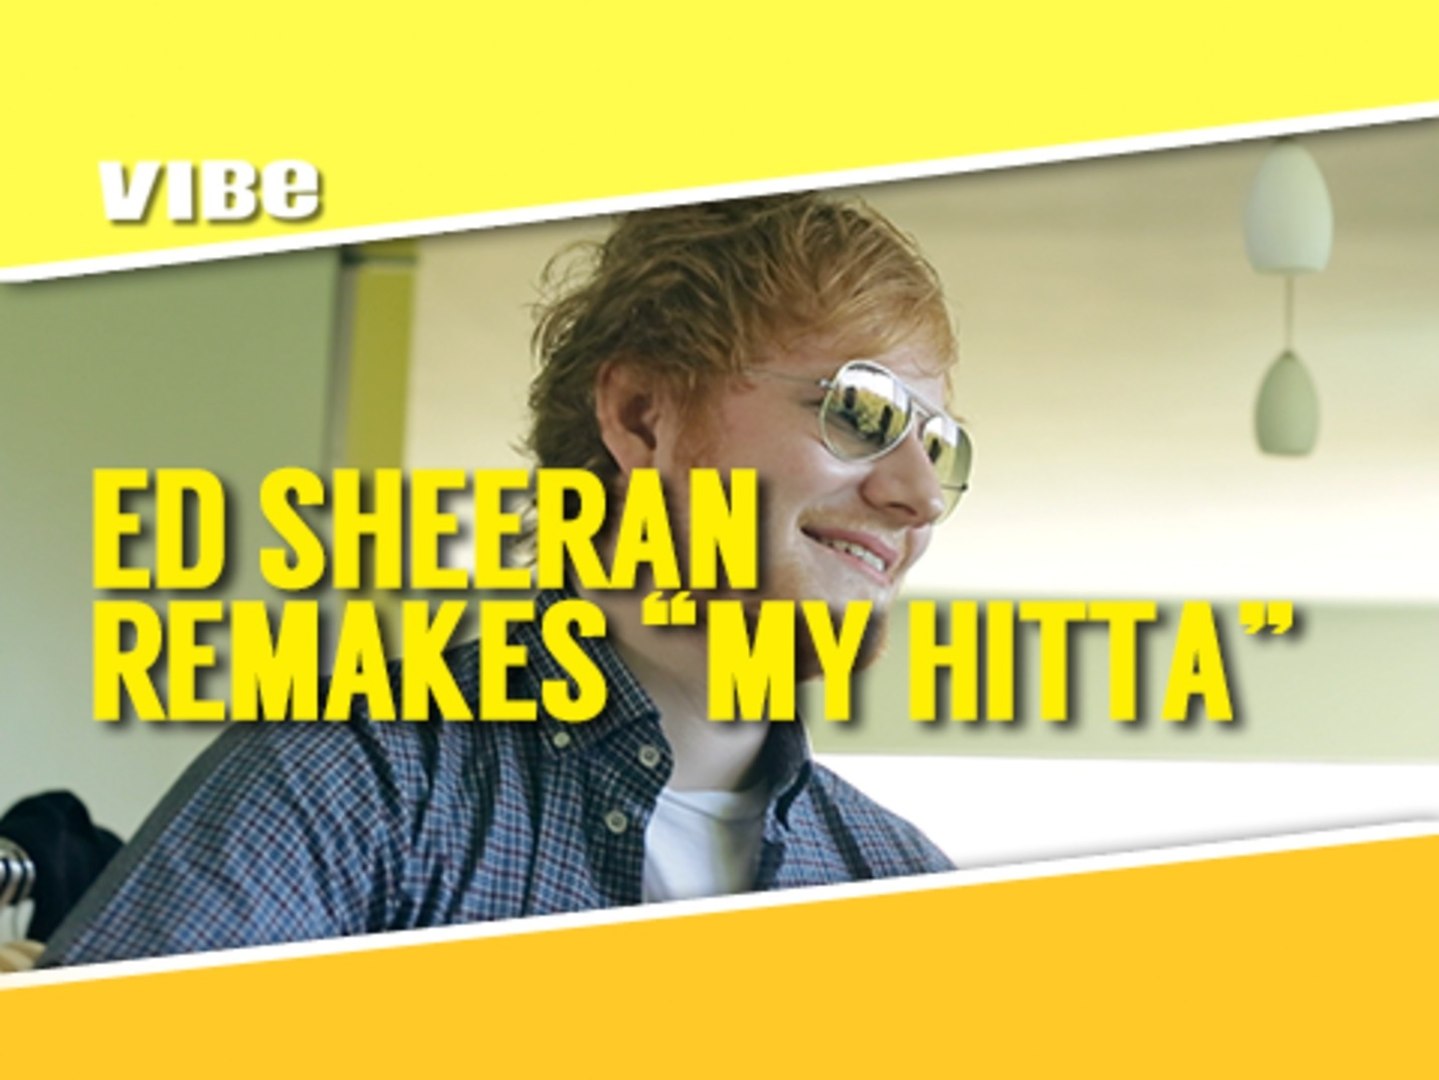 Ed Sheeran - My Gingers (My Hitta Cover)